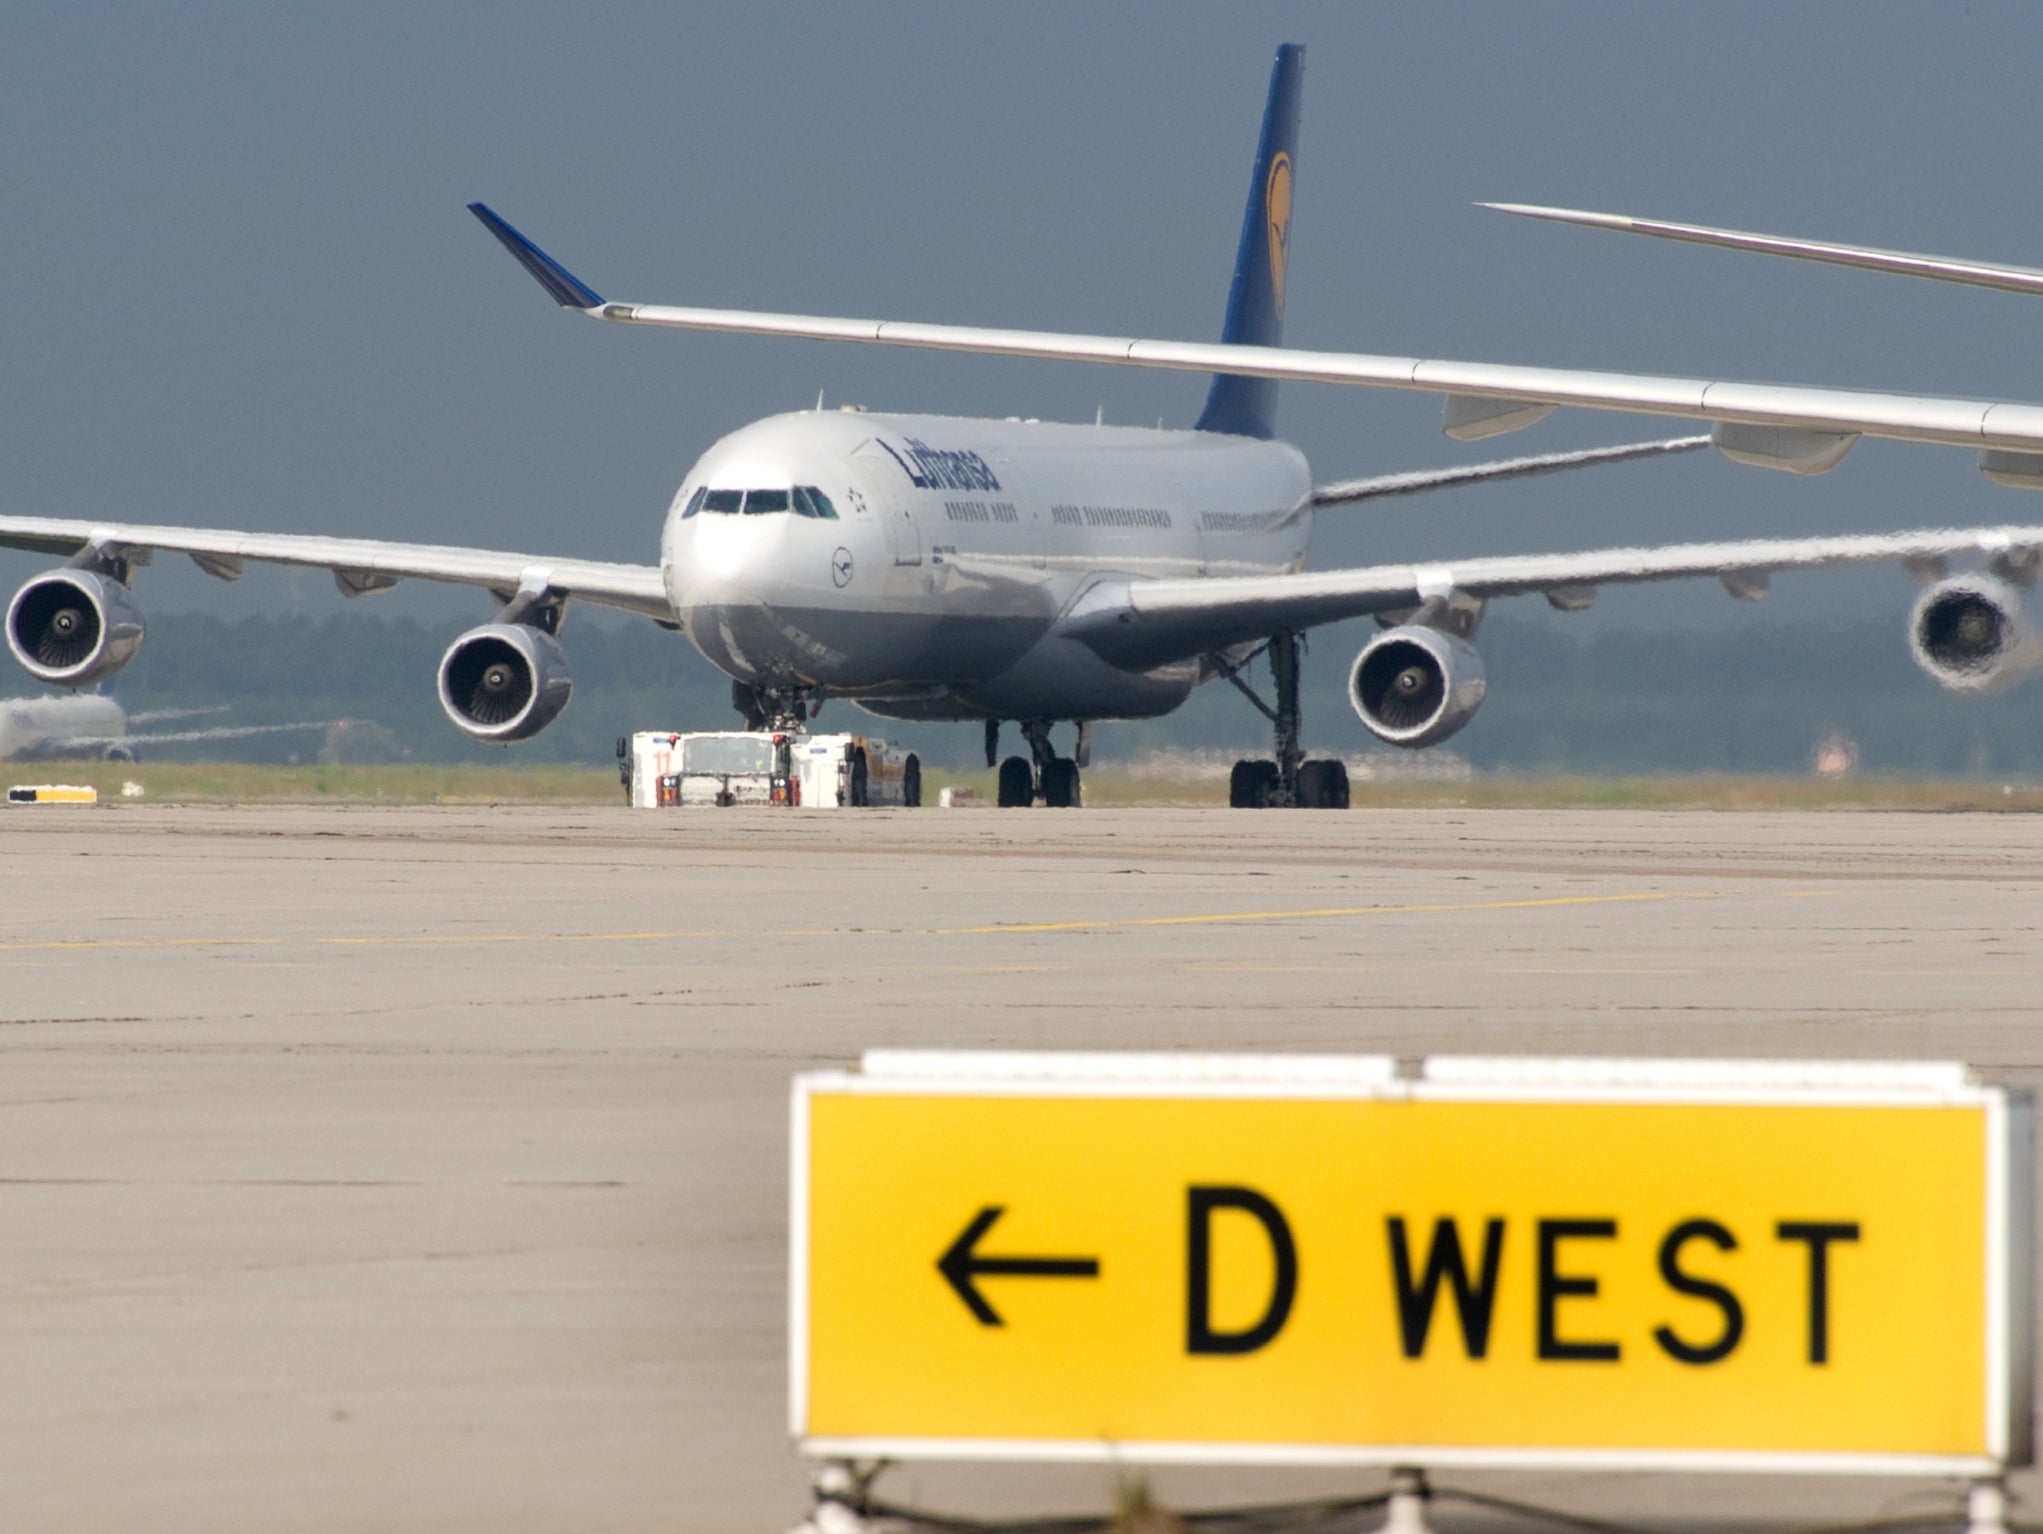 Parada en tierra: Aviones de Lufthansa en Frankfurt, su principal centro de operaciones